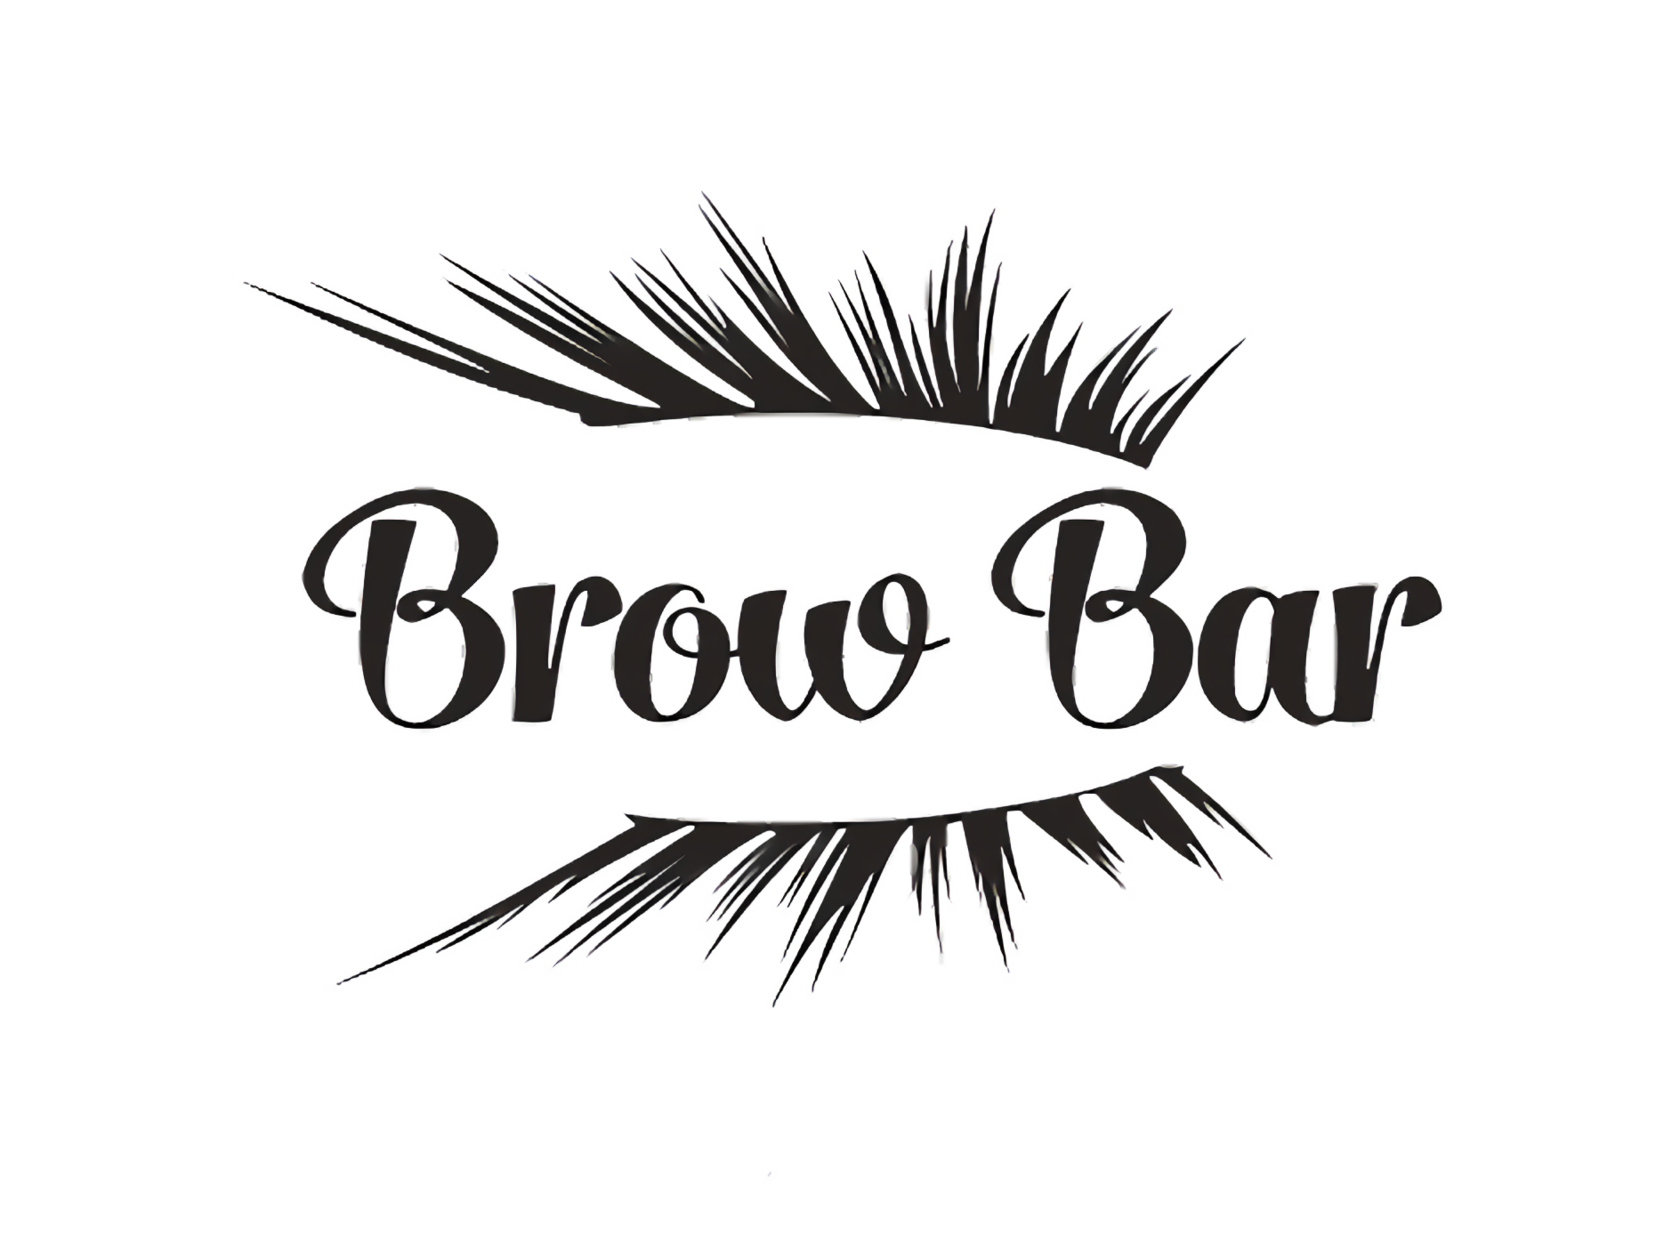 Брови brow bar. Brow Bar логотип. Логотип Beauty Brow. Brows надпись. Brow Master логотип.